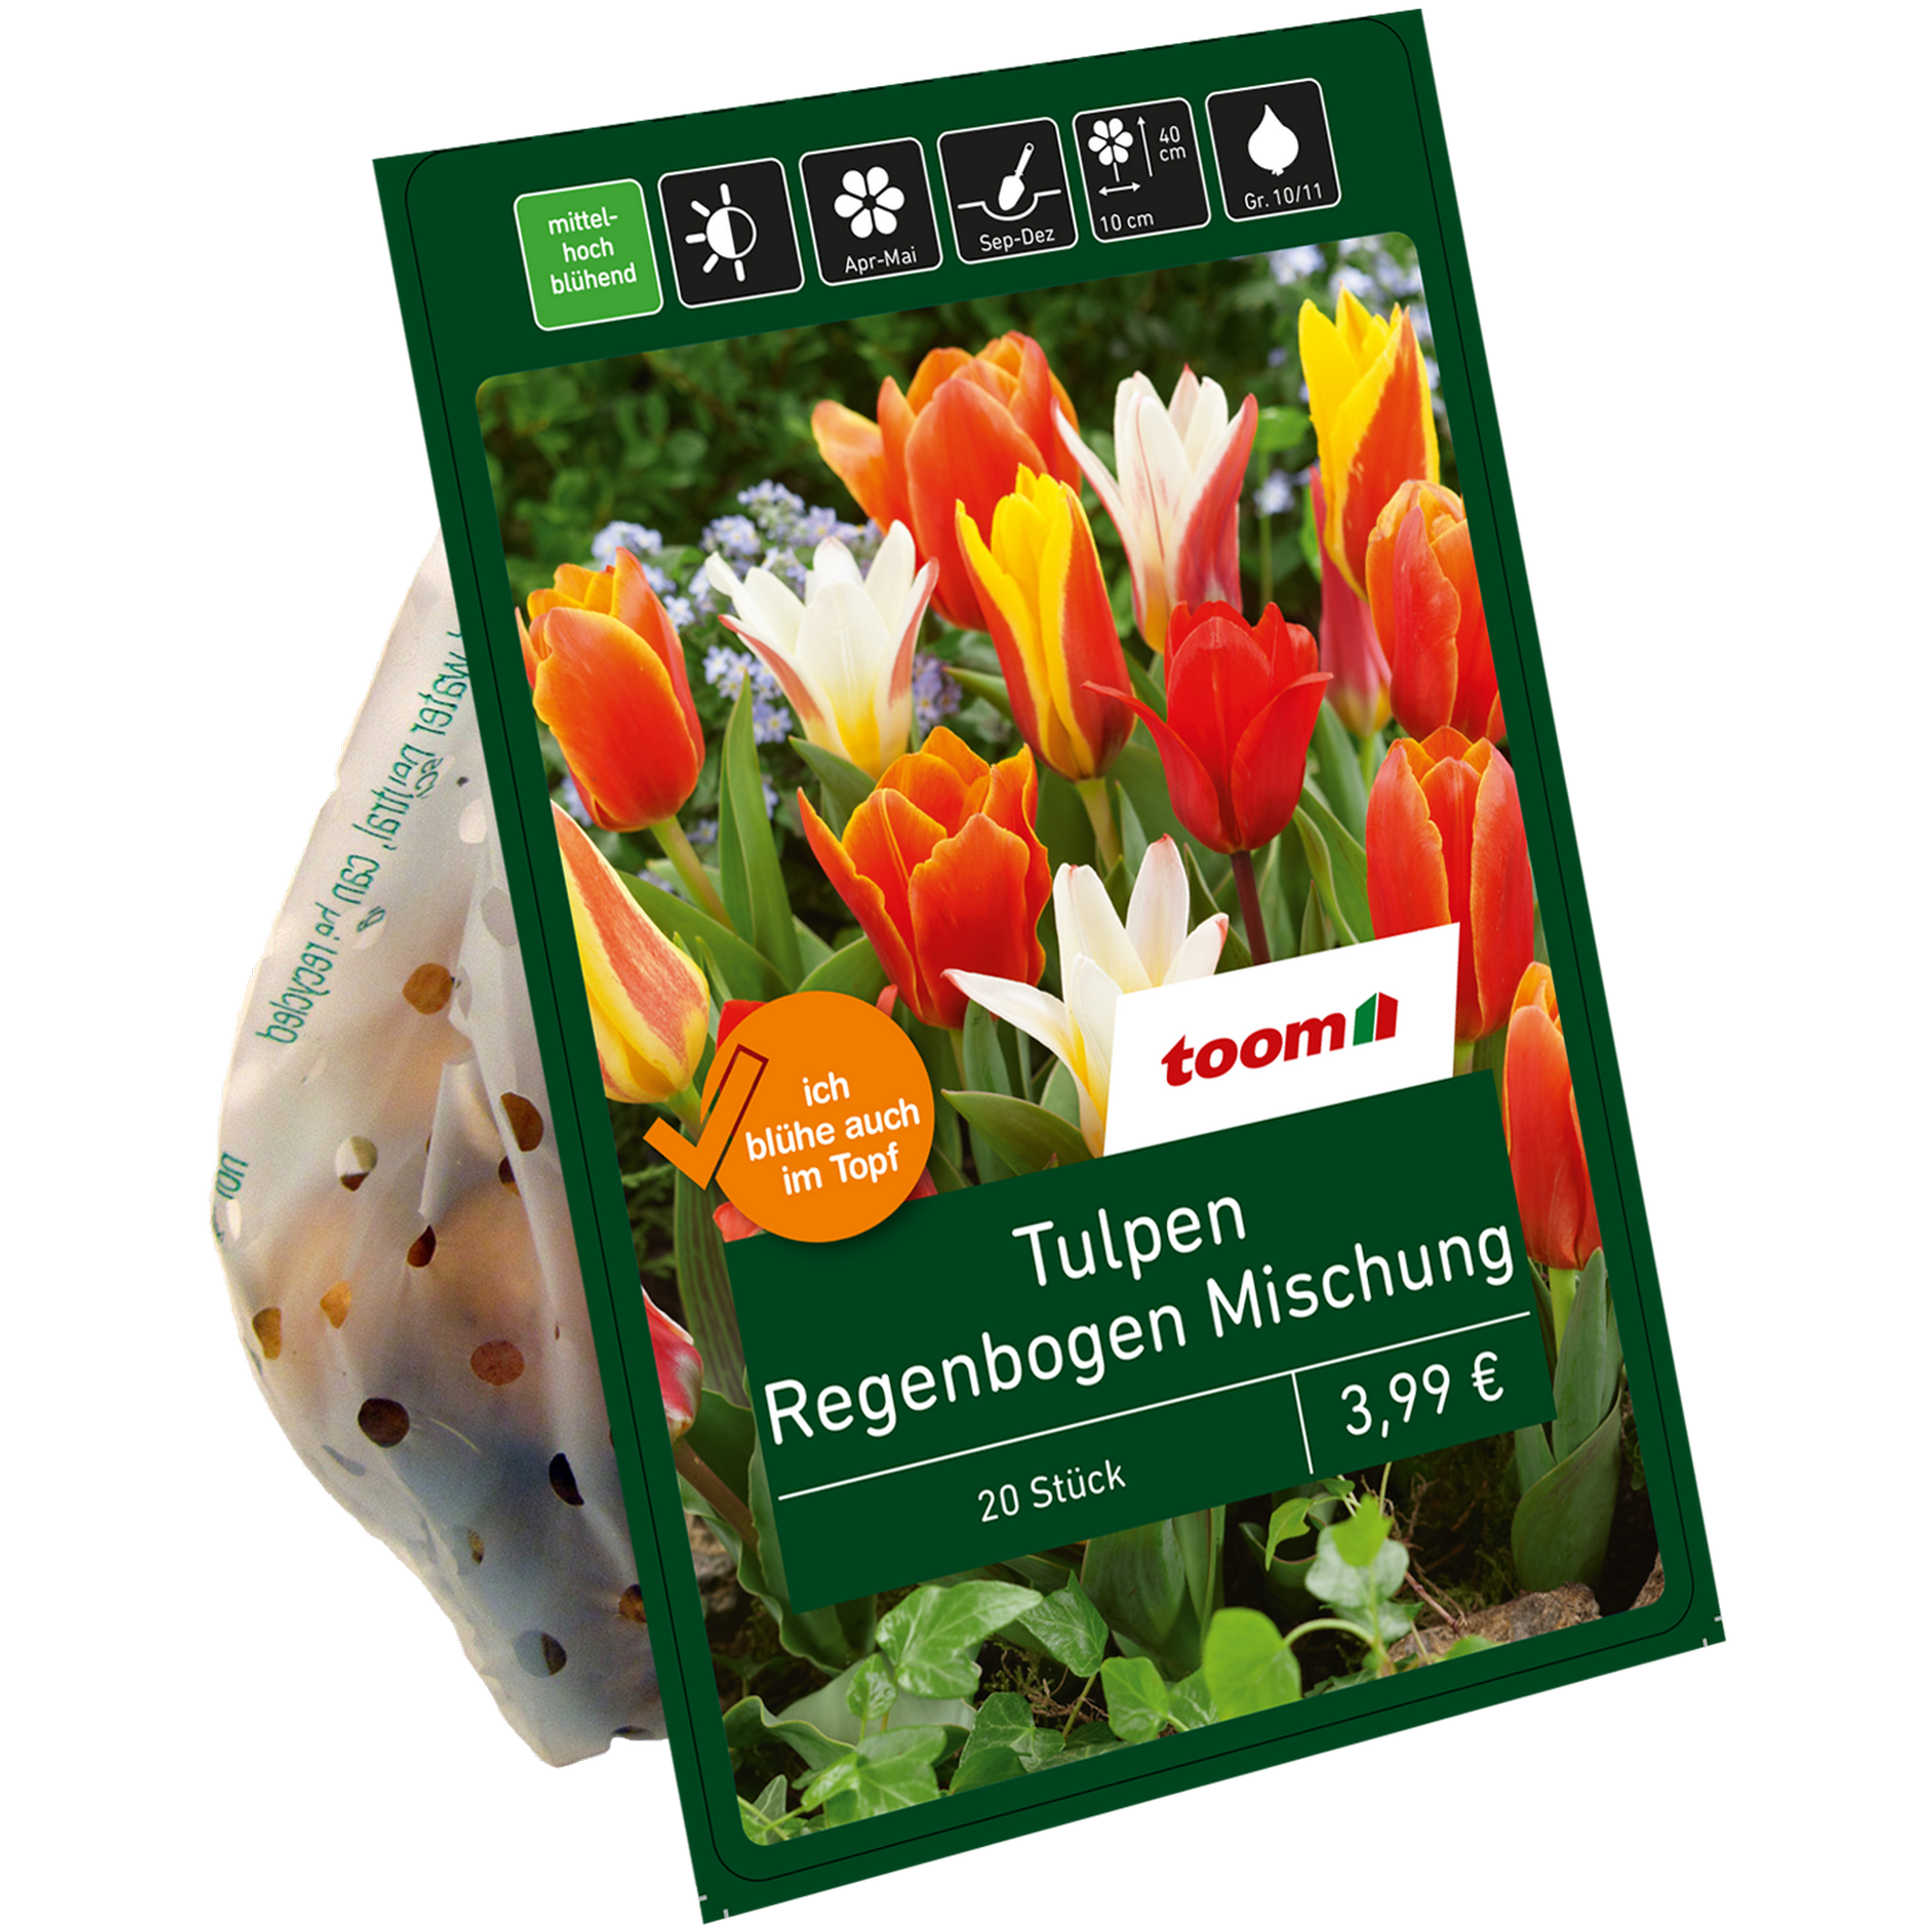 Botanische Tulpen 'Regenbogen' 20 Zwiebeln + product picture